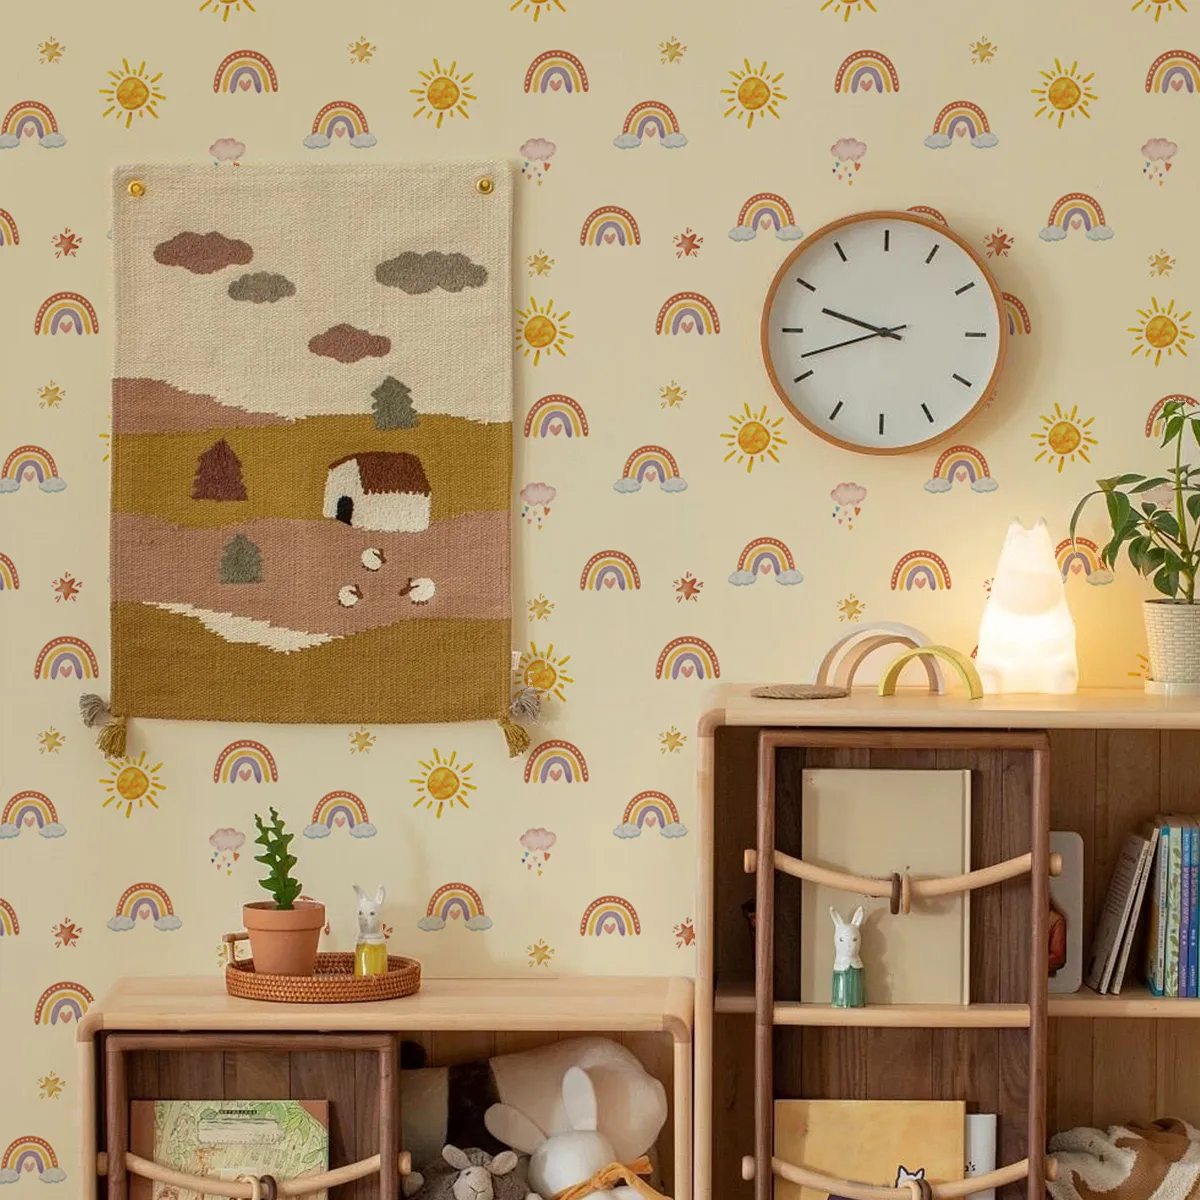 만화 비행 용, 큰 나무, 구름, 별, 어린이 집을위한 벽 스티커, 가정 장식 벽 스티커.